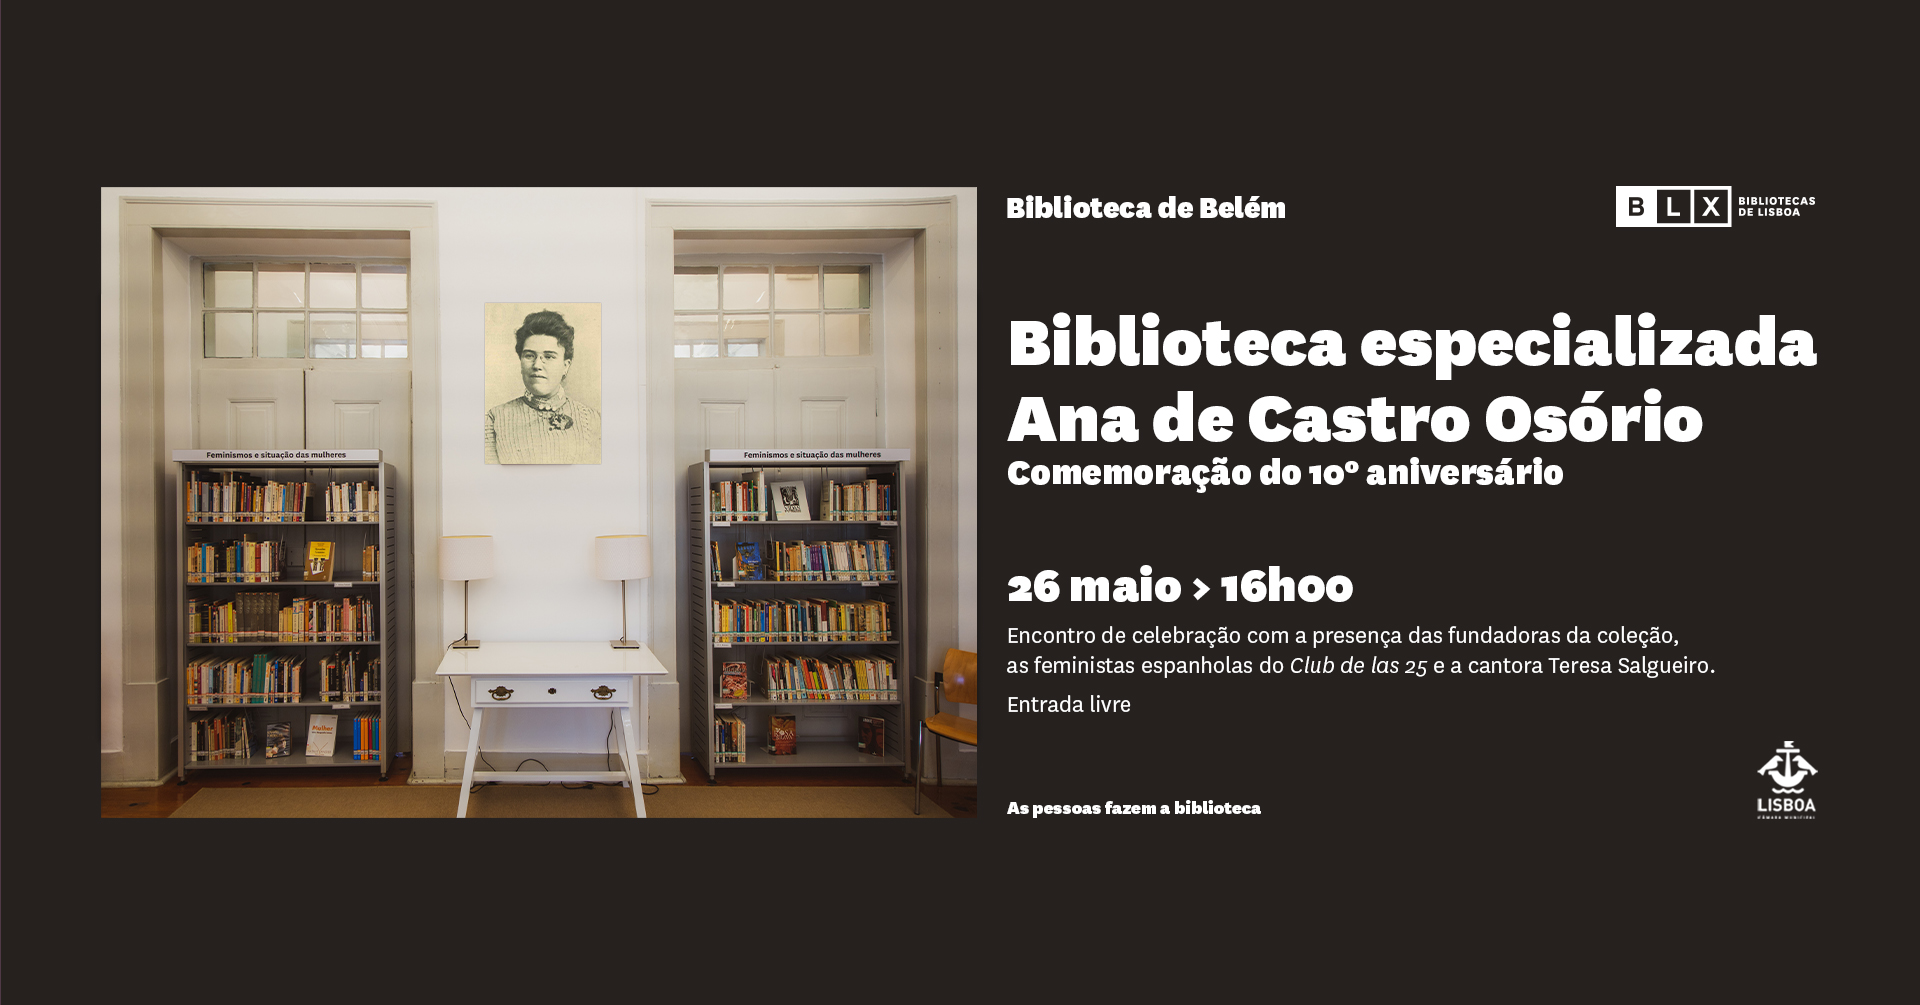 Comemoração do 10º aniversário da Biblioteca Especializada Ana de Castro Osório